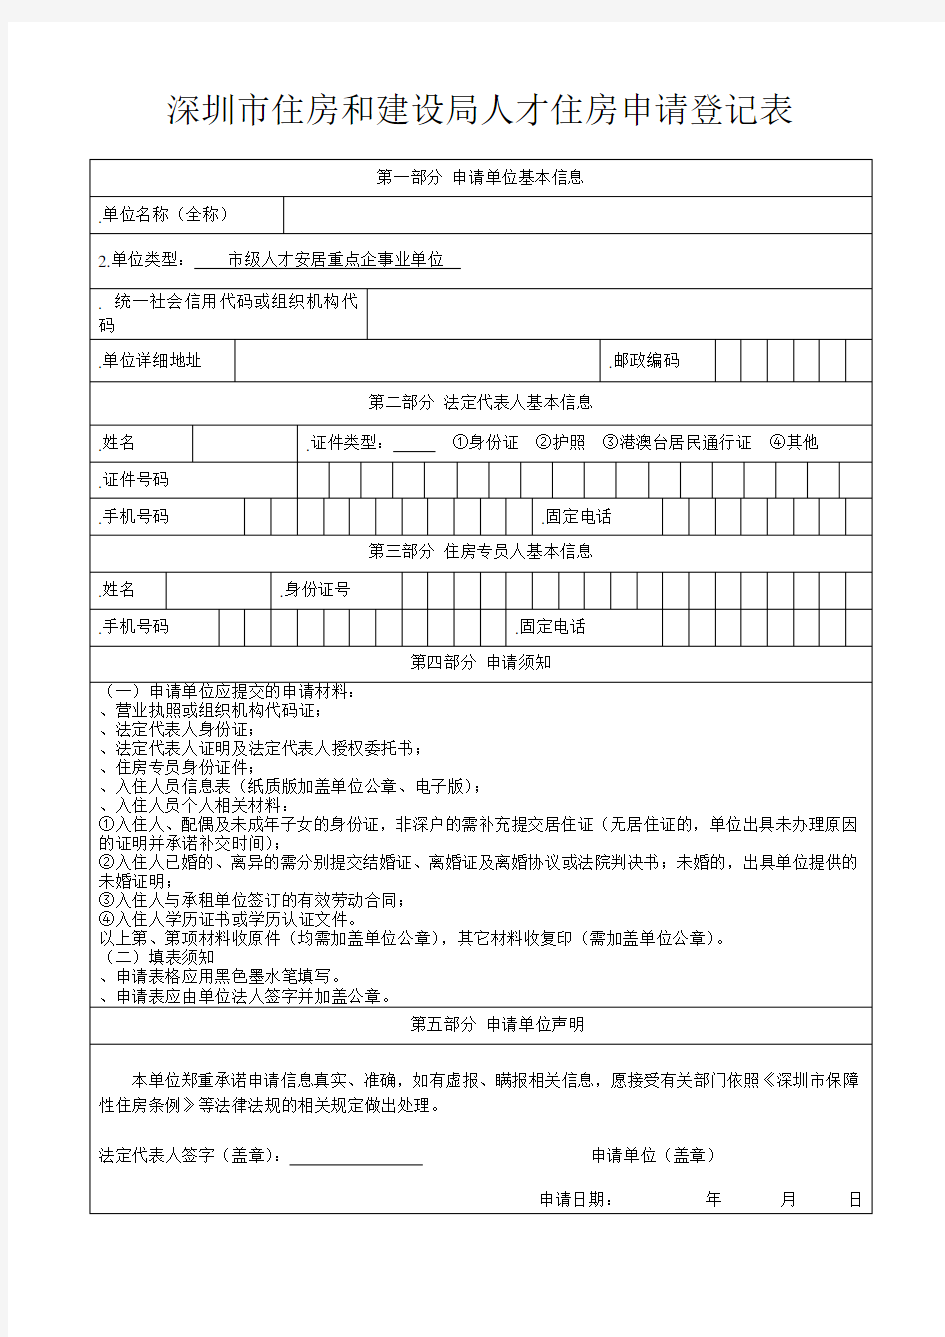 深圳市住房和建设局人才住房申请登记表